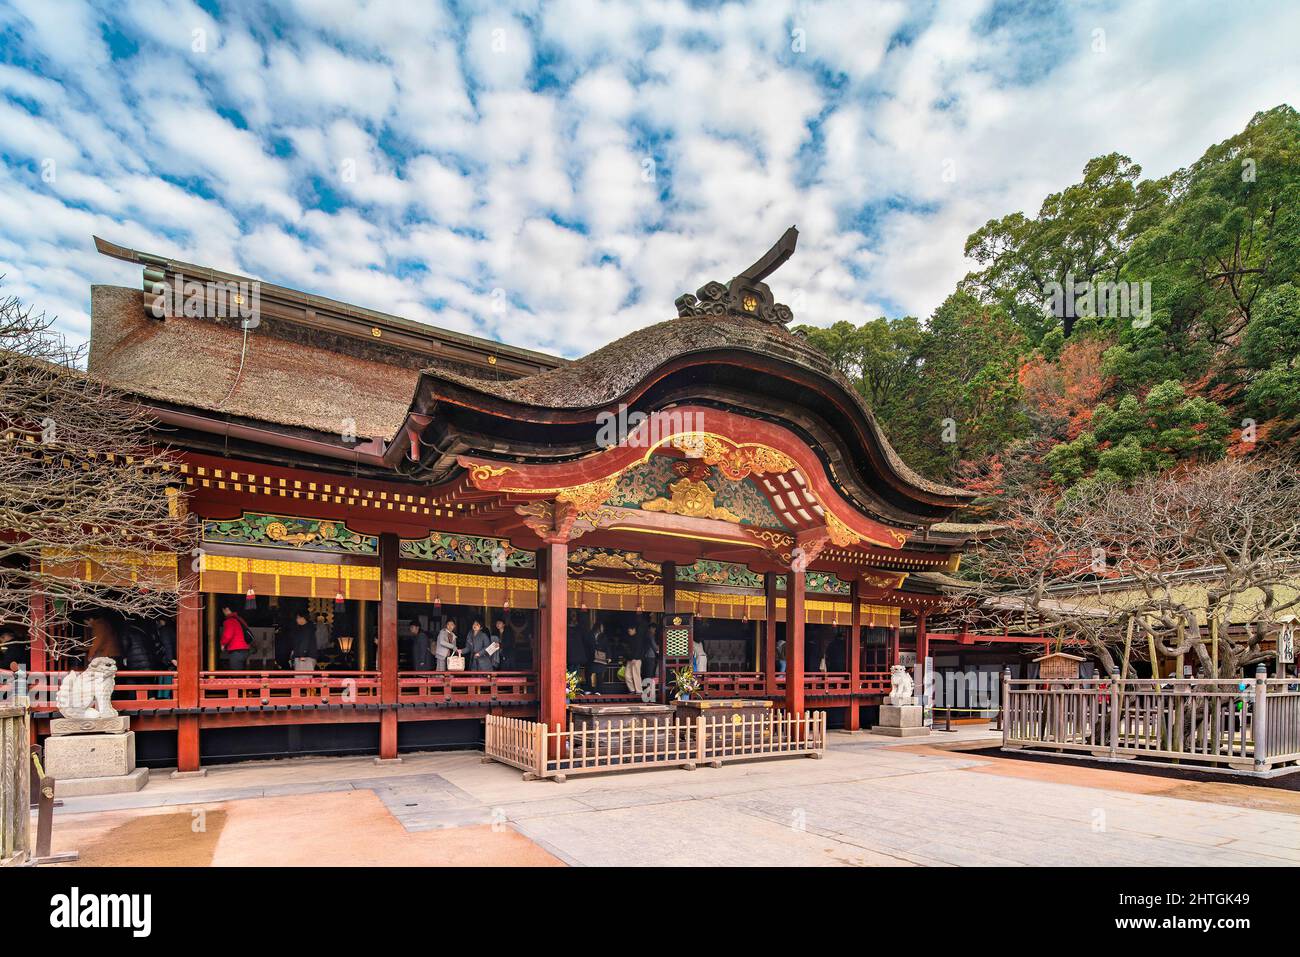 kyushu, fukuoka - dicembre 07 2019: Sala principale dello Shintoist chiamata honden nel santuario giapponese di Dazaifu di Saifu adorned con un tetto curvo di paglia chiamato Foto Stock